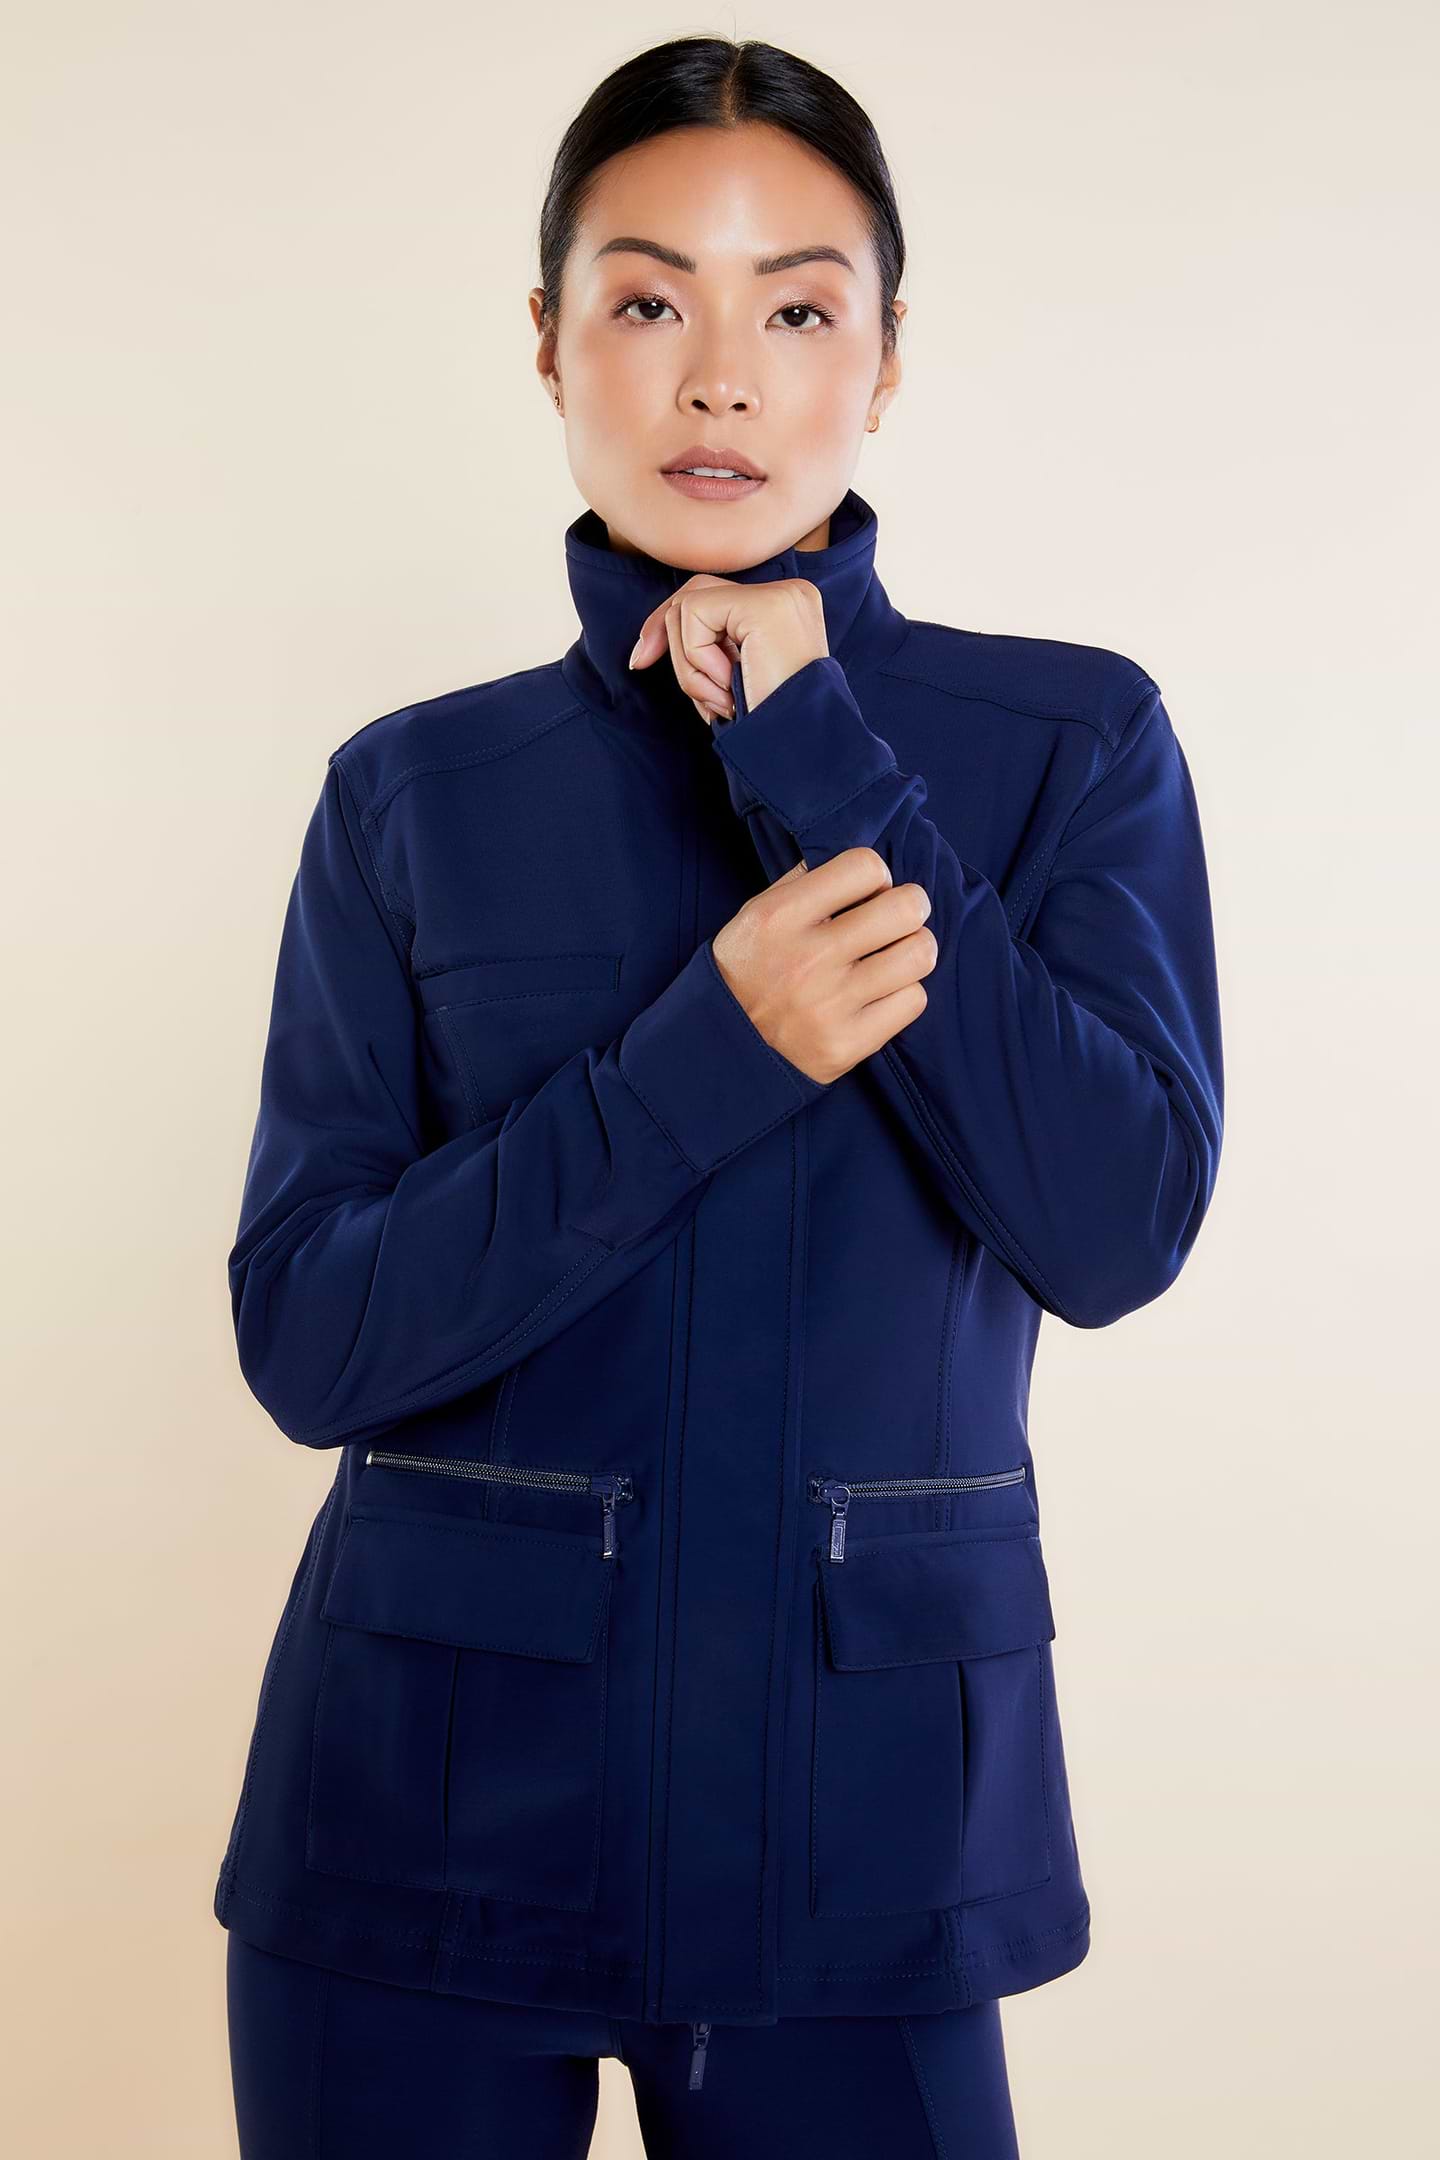 discount 85% Esprit blazer WOMEN FASHION Jackets Knitted Navy Blue M 